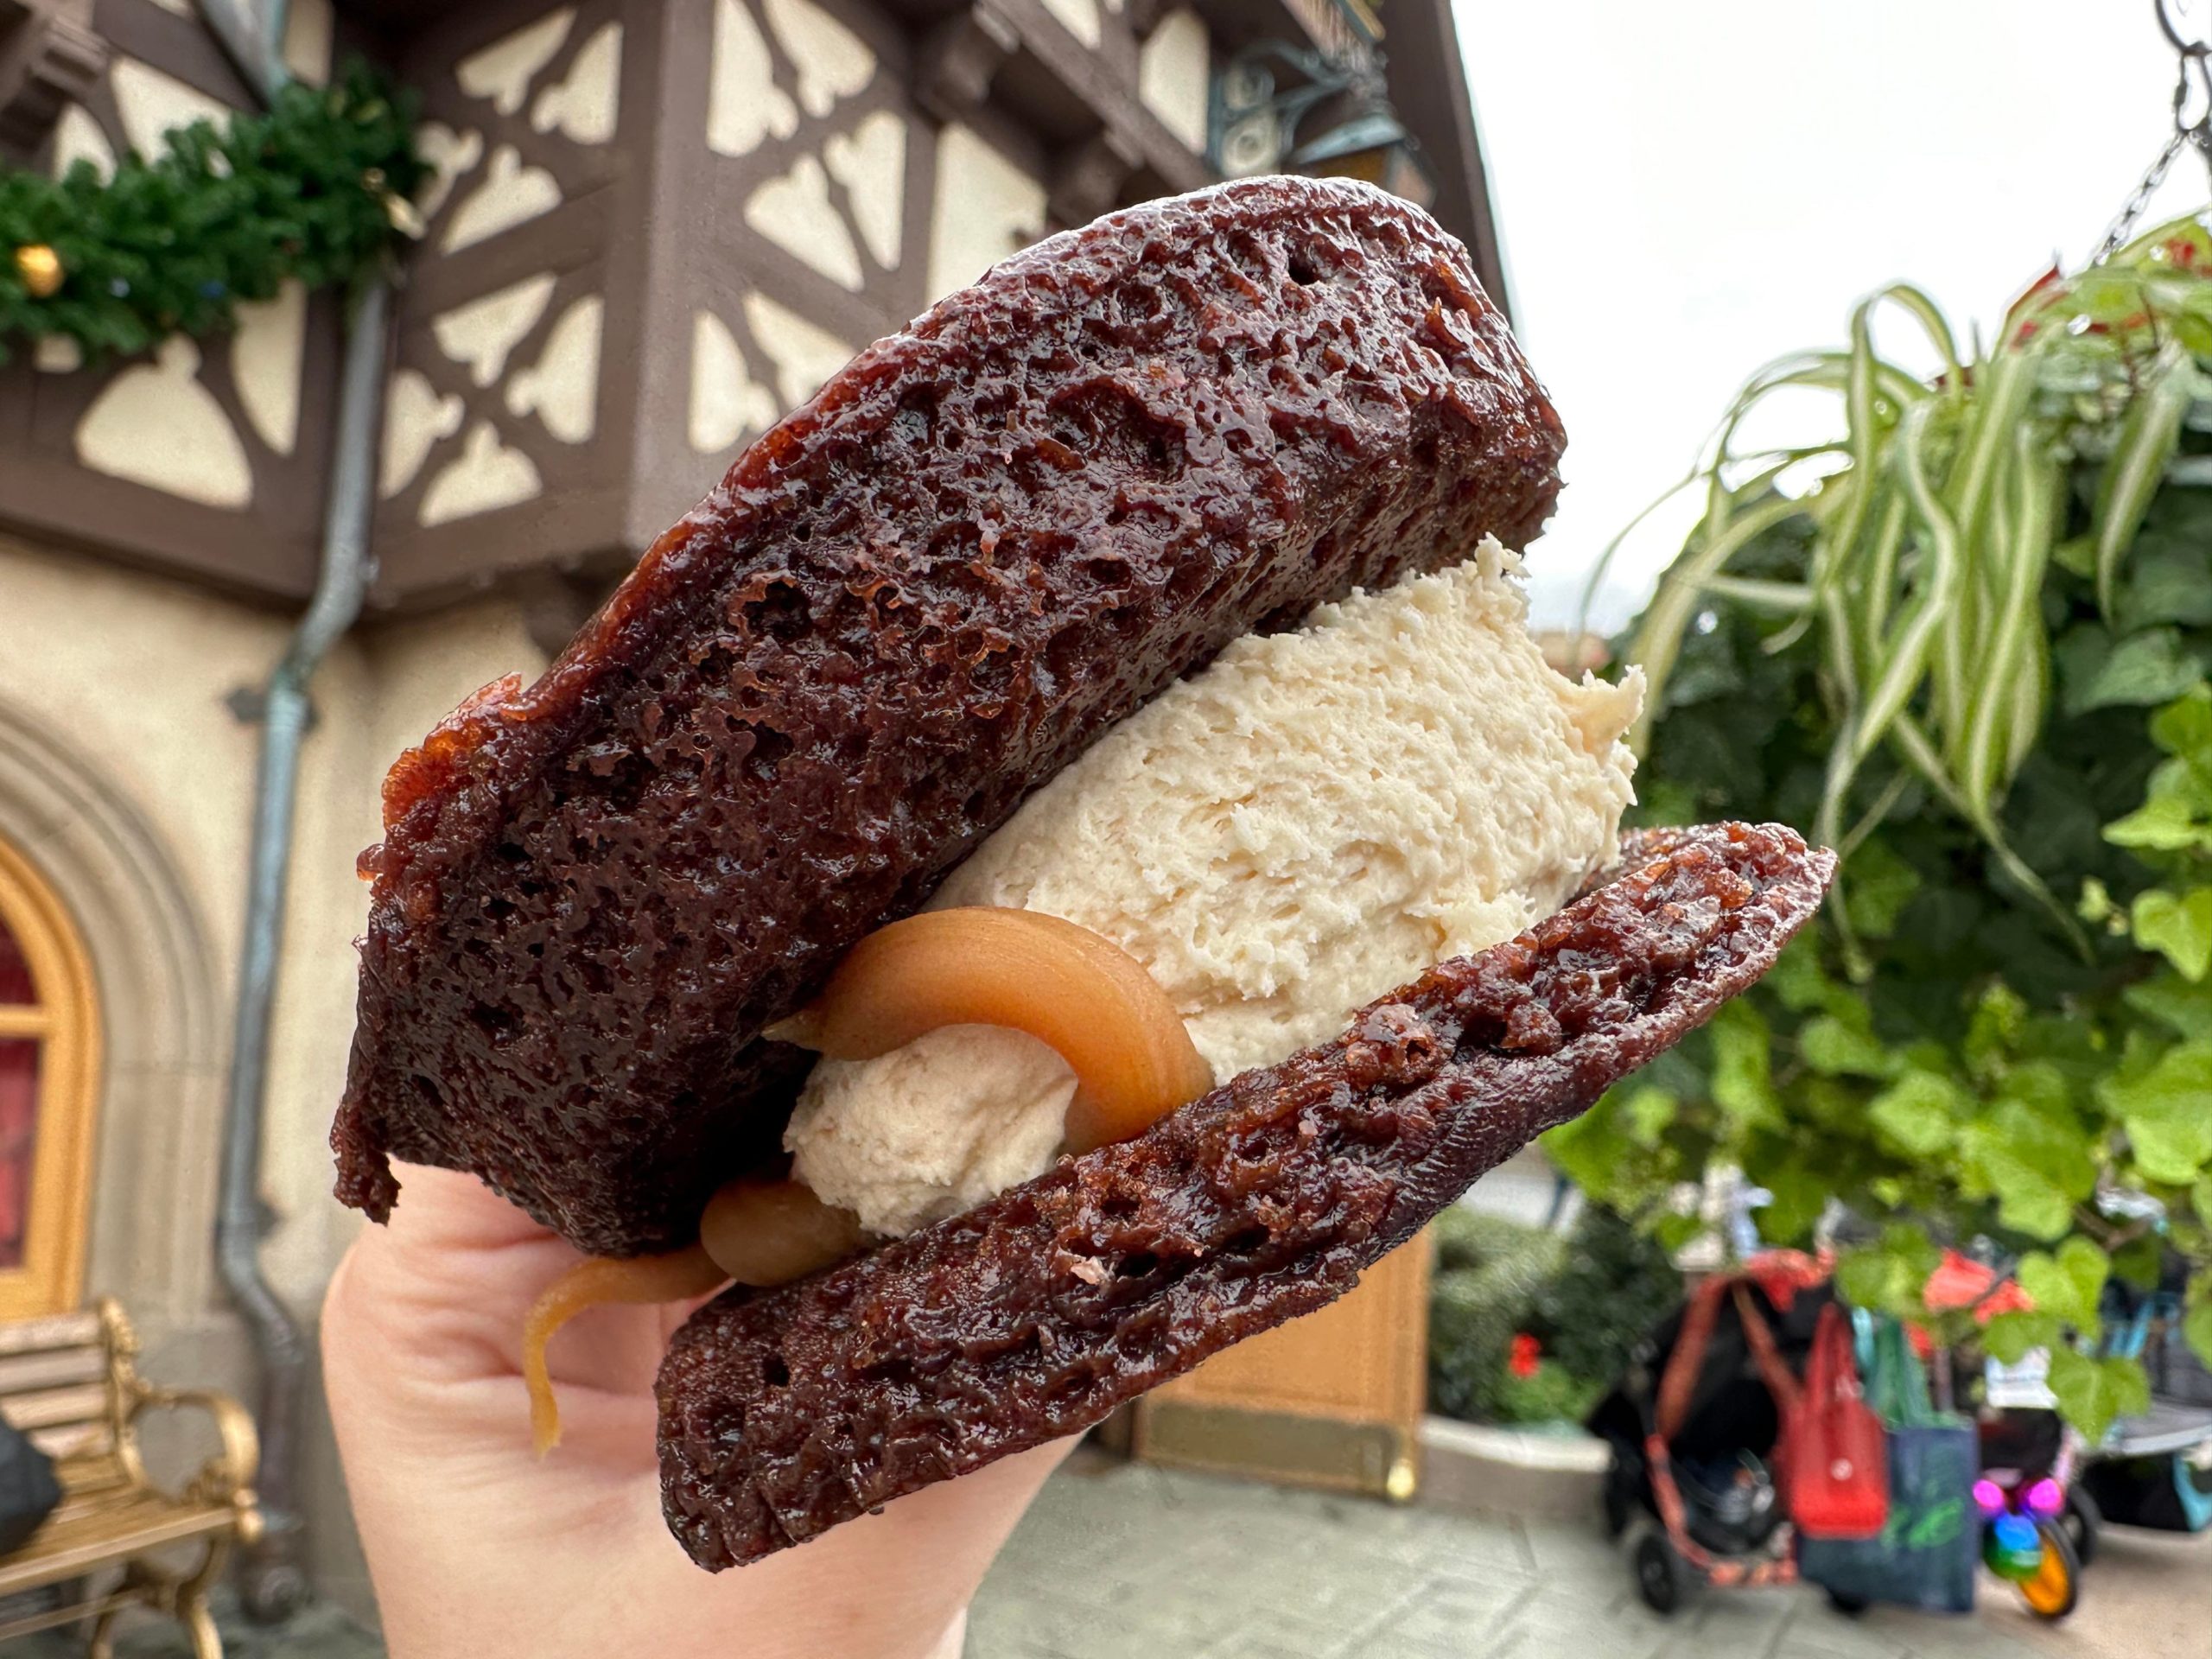 Werther's Original Caramel Chocolate Cookie Sandwich